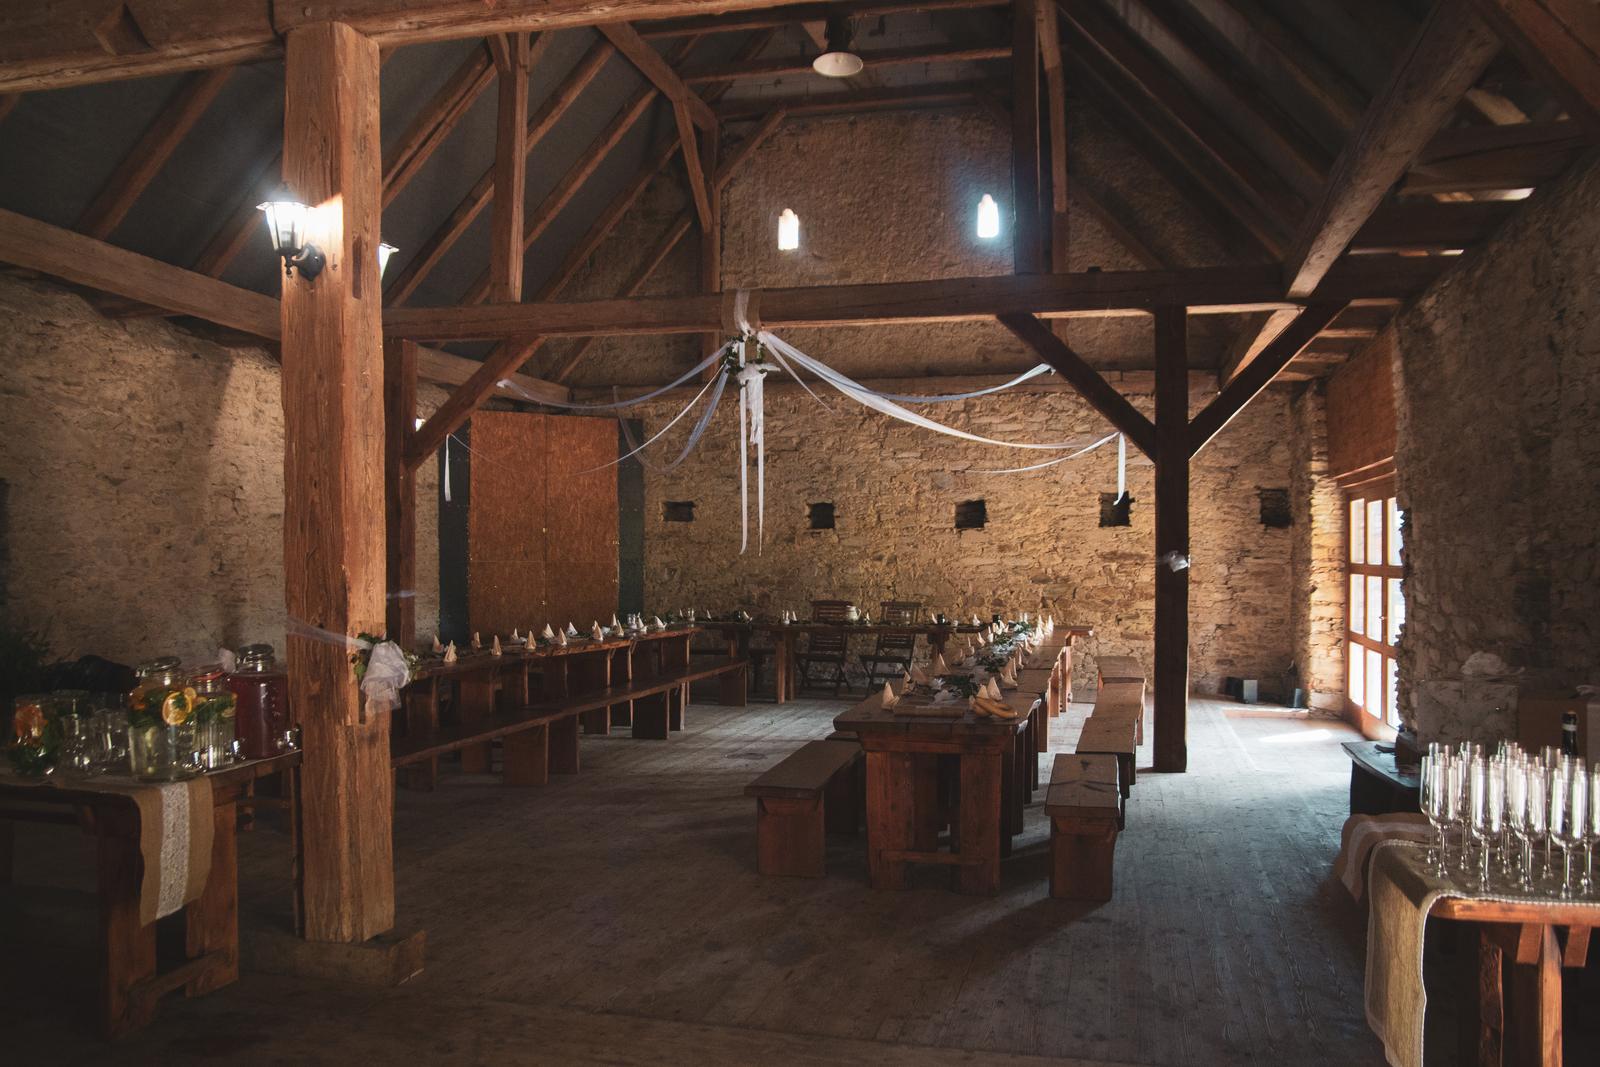 Svatba ve Škvorci - Škvorecký dvůr - stodola uvnitř (před akcí:))